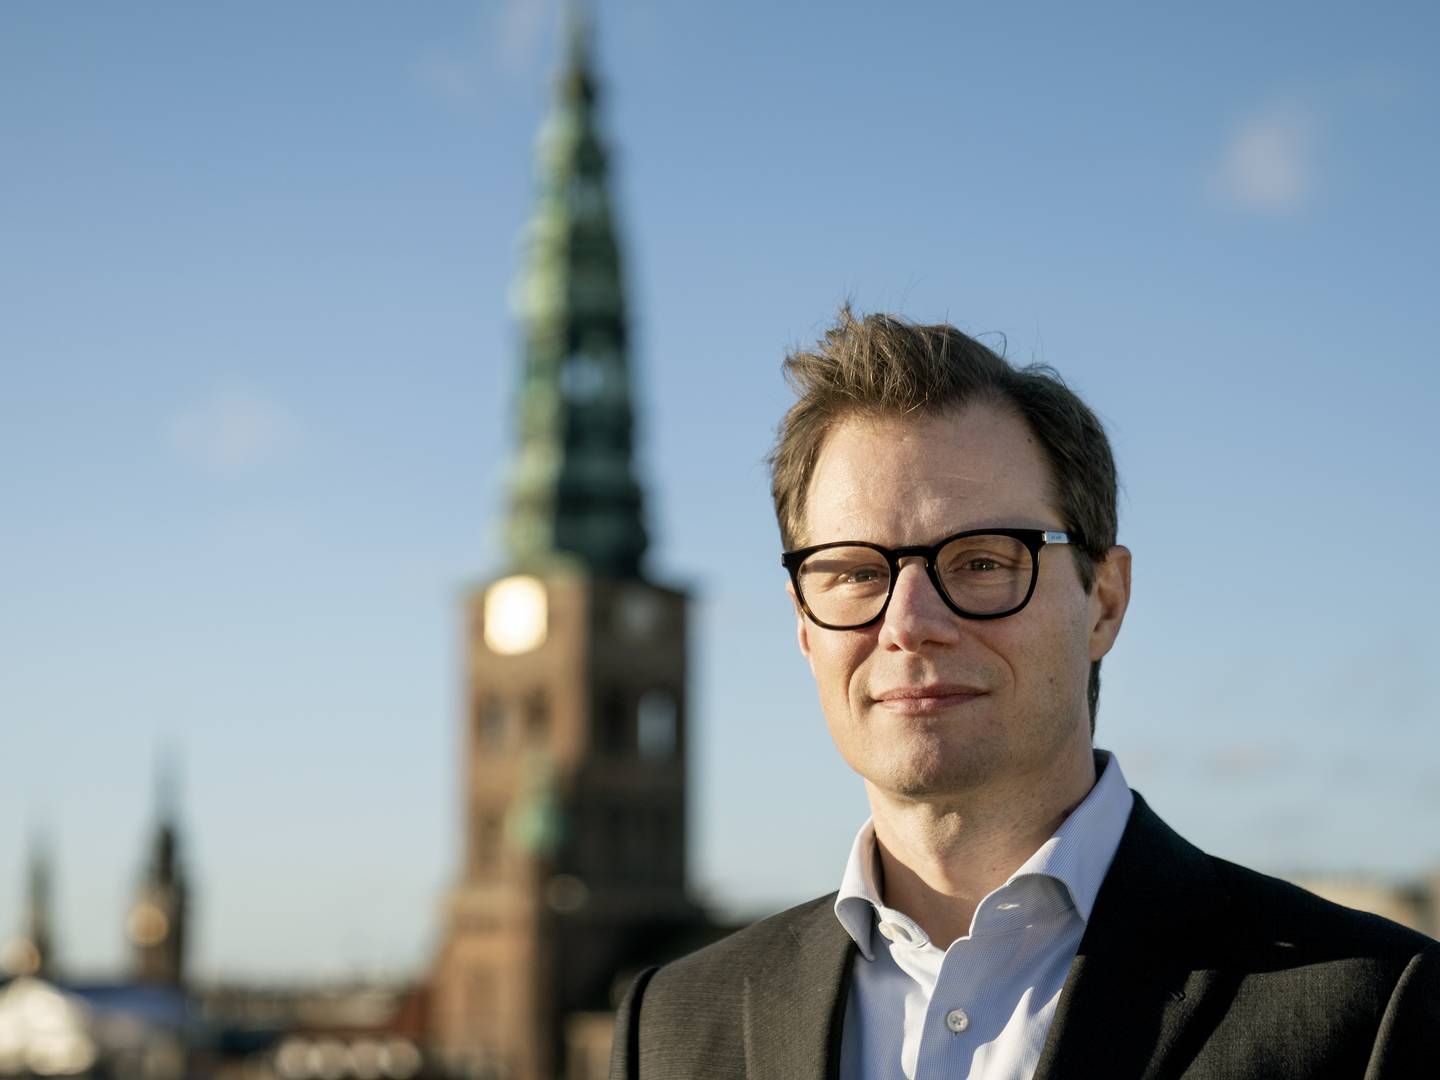 Den tidligere risikochef i Danske Bank Carsten Egeriis er mandag nyadm. direktør i Danske Bank. Han erstatter Chris Vogelzang, der trækker sig på grund af en sag om hvidvask i den hollandske bank ABN Amro. | Foto: Stine Bidstrup/ERH